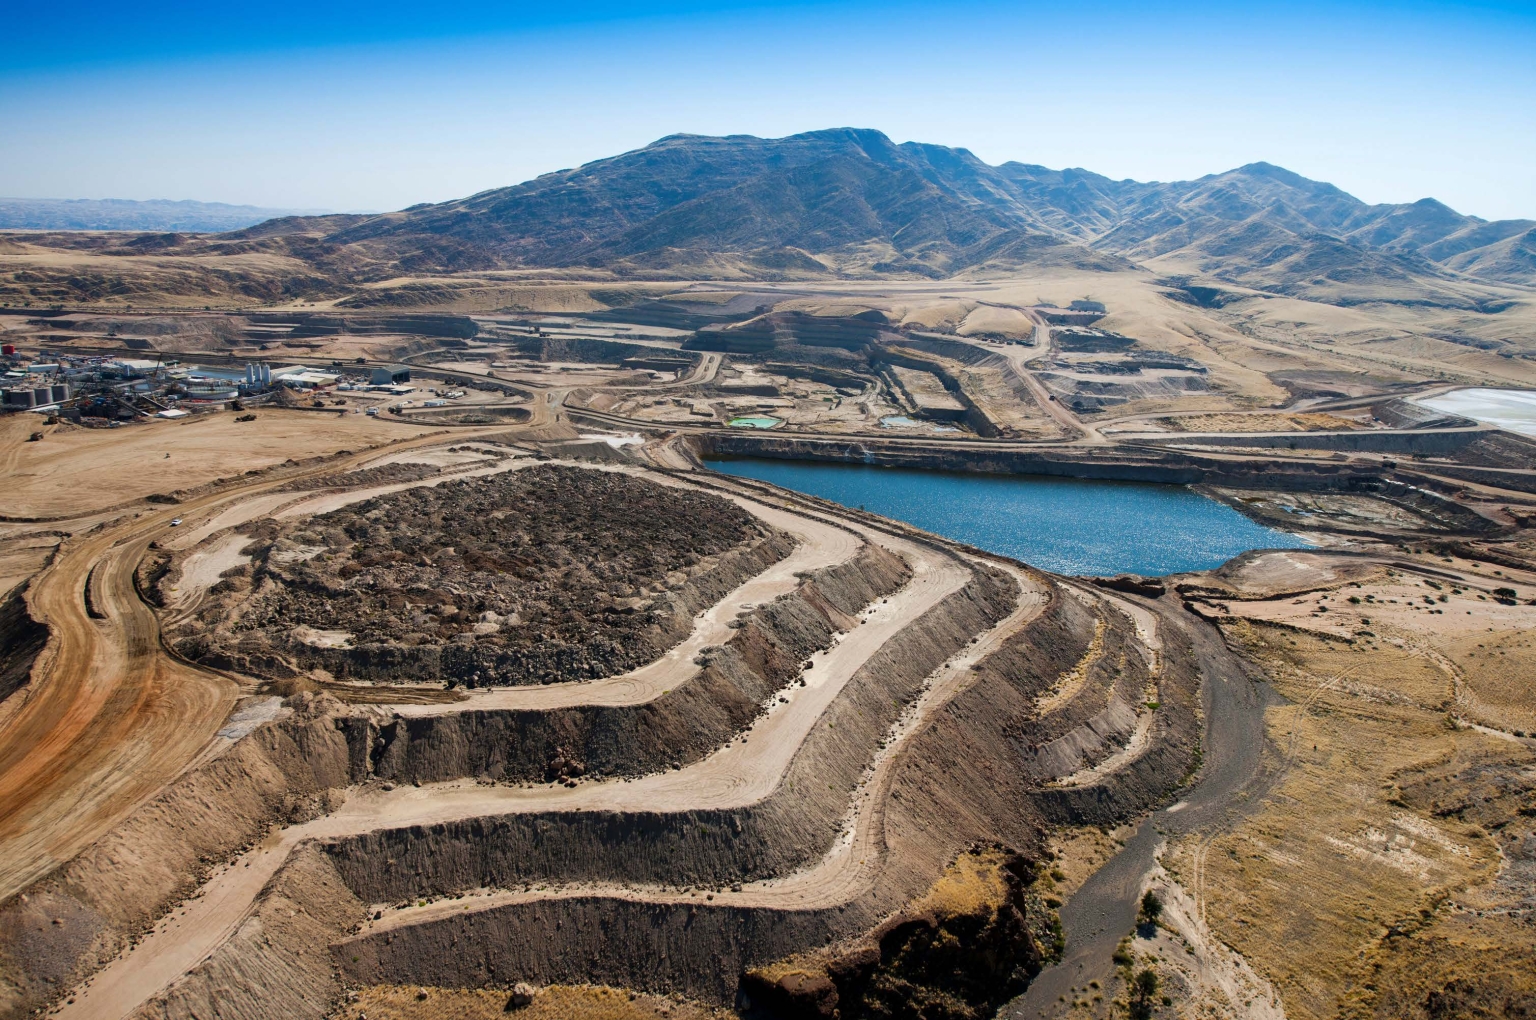 Die Paladin Energy Ltd. hat mehrere Lieferverträge abgeschlossen, die sie unter anderem mit Uran aus der Mine Langer Heinrich in Namibia erfüllen will.